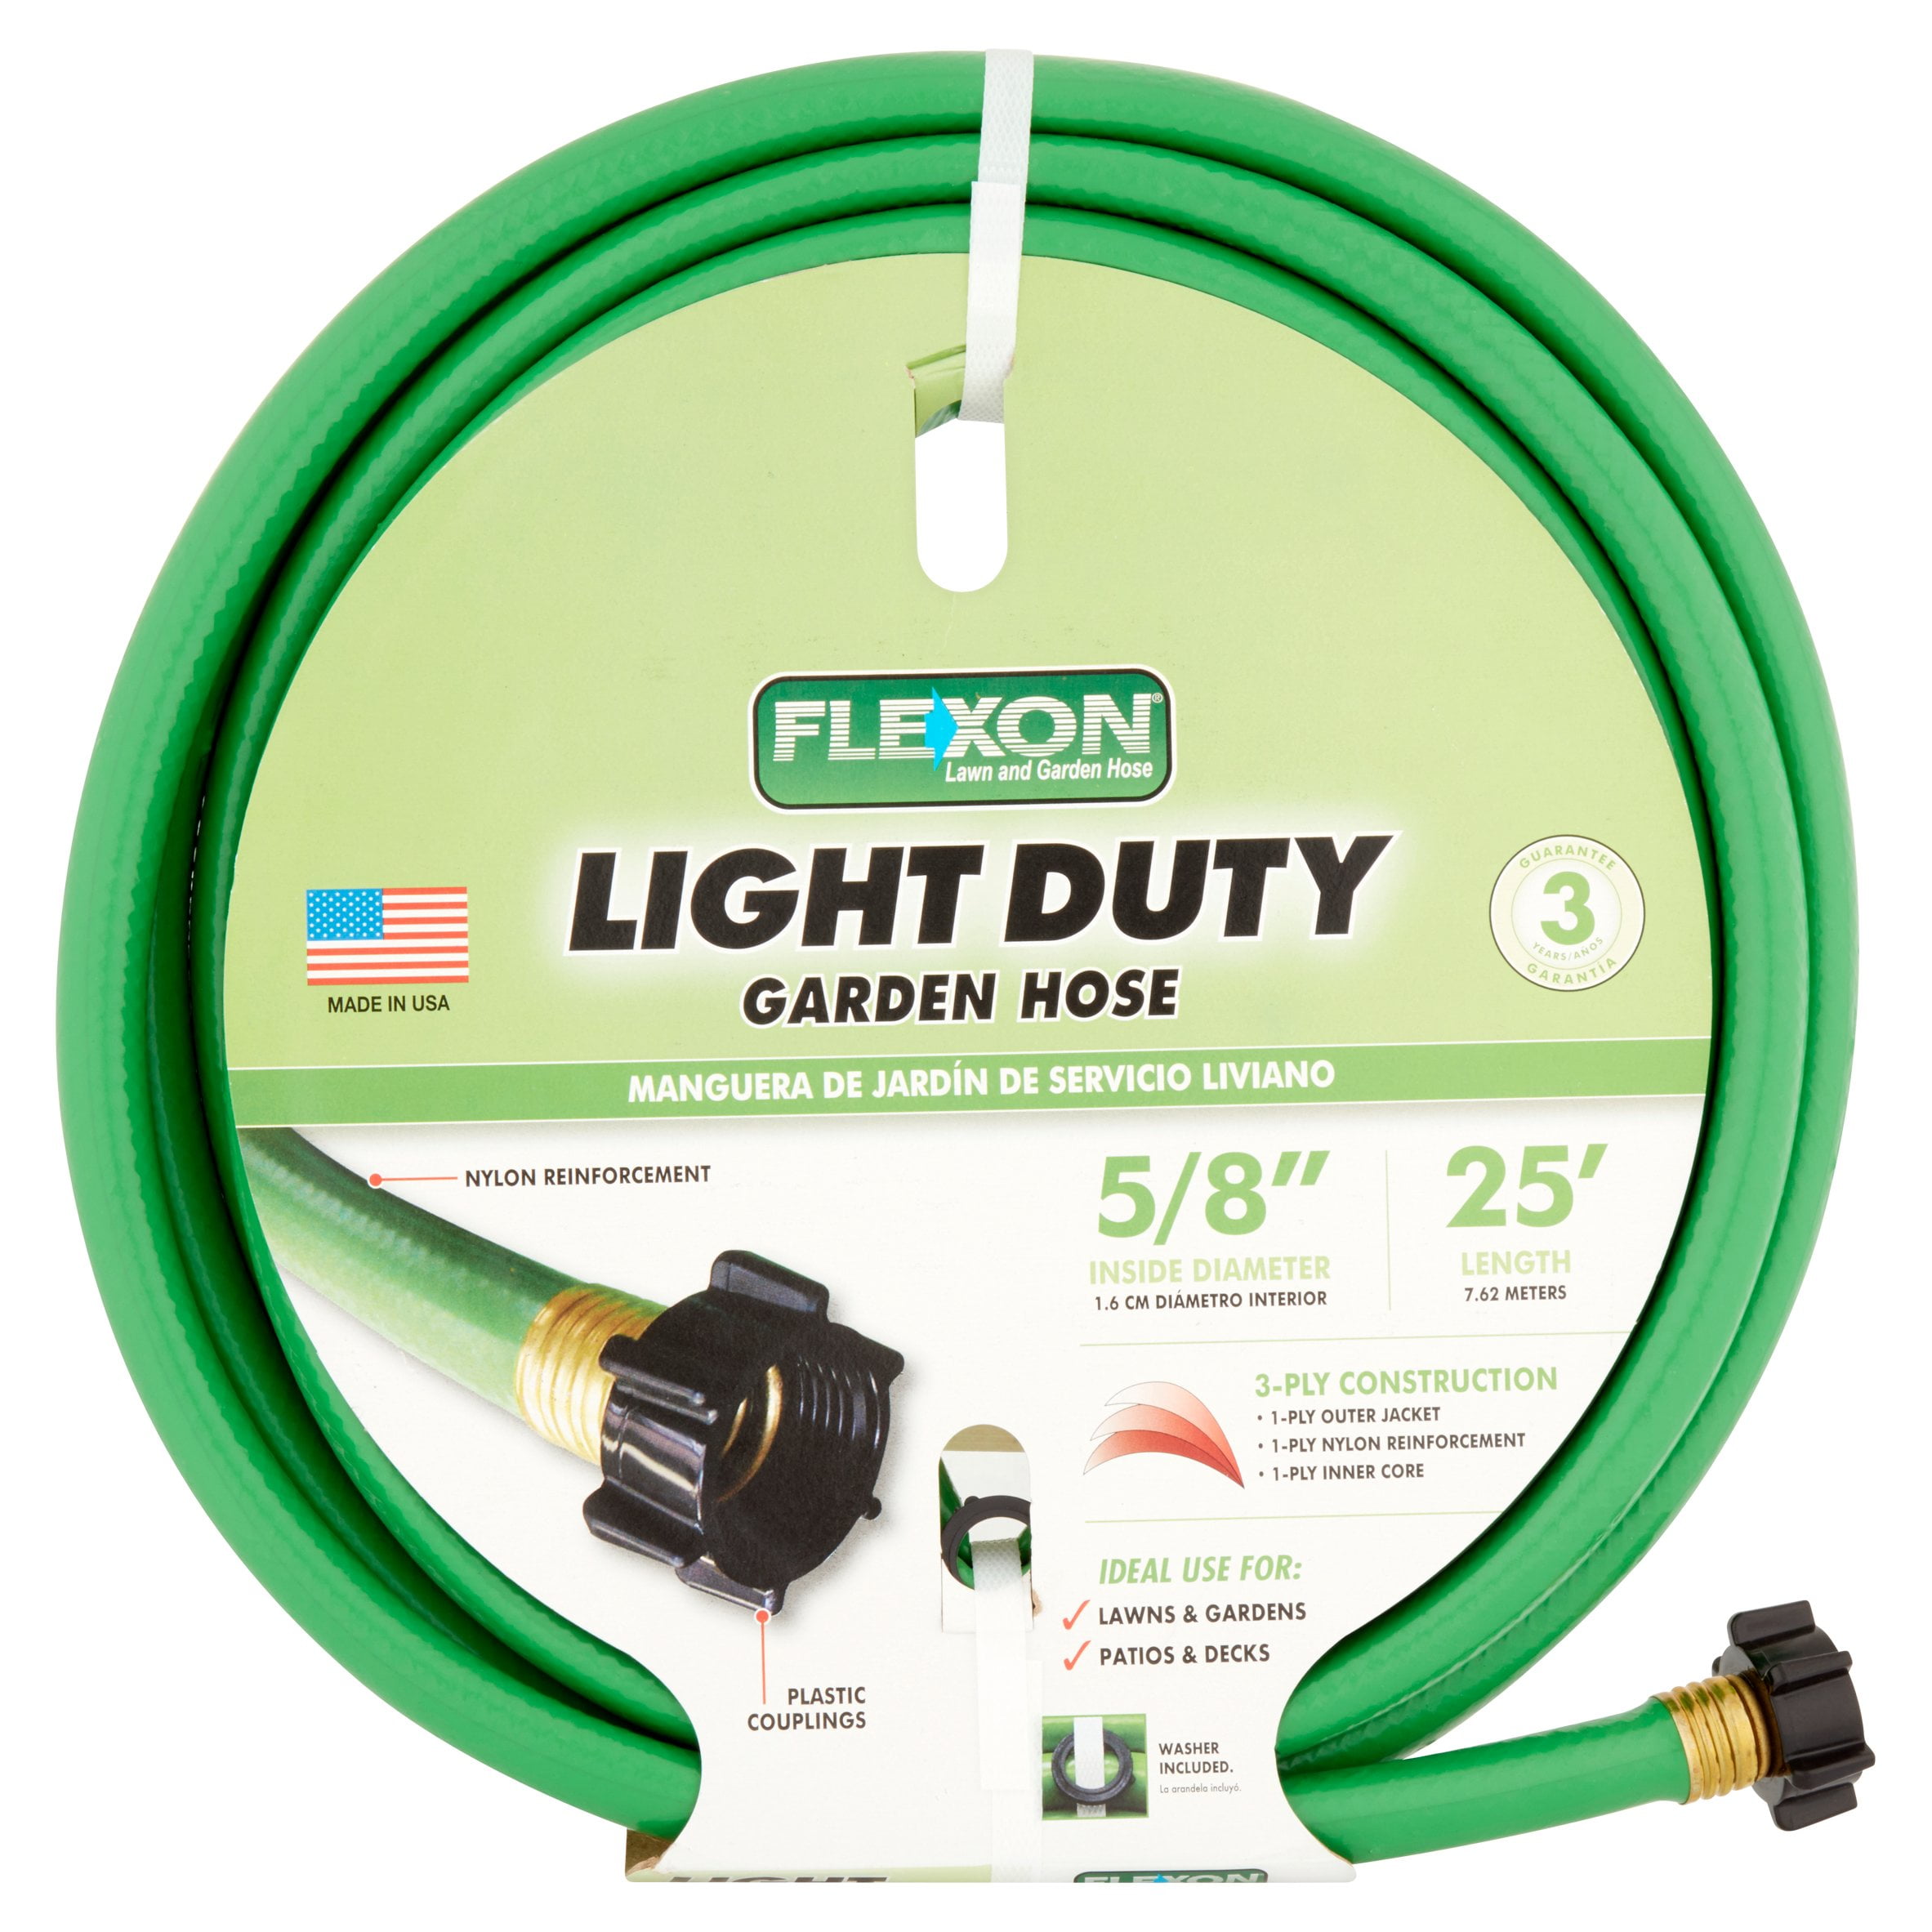 Flexon Light Duty Garden Hose - Walmart 